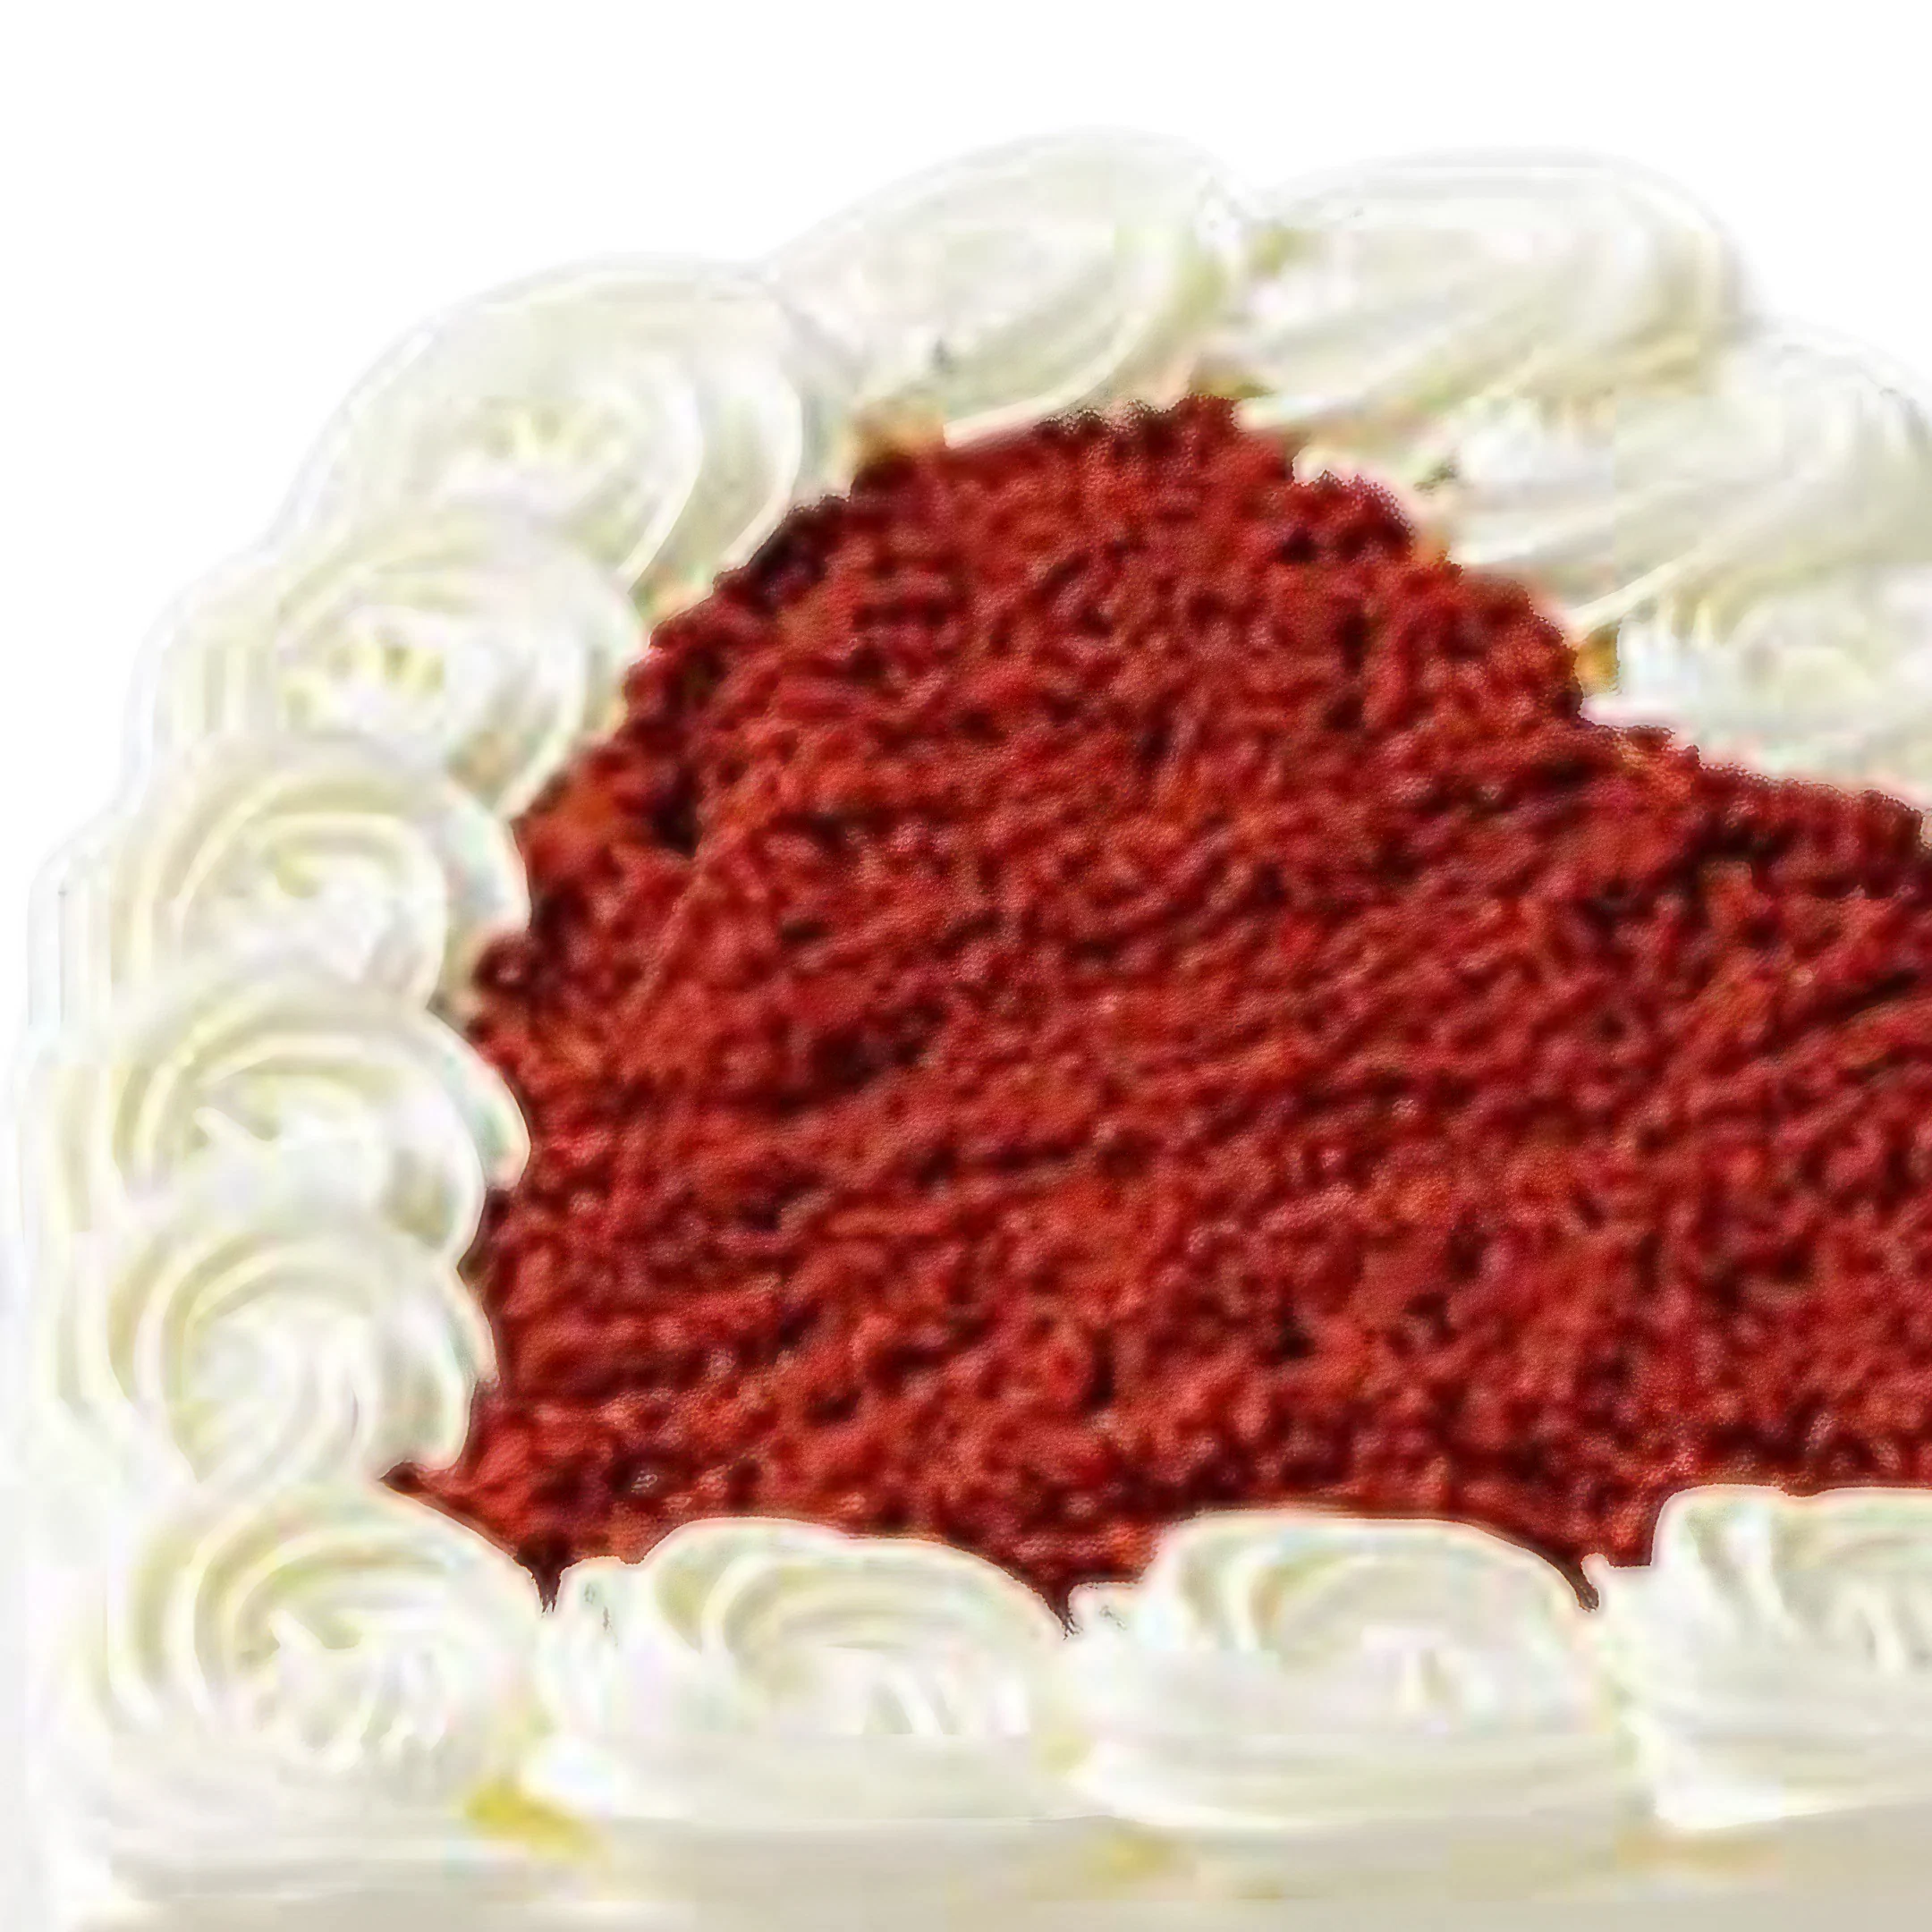 Sweet Red Heart Velvet Cake